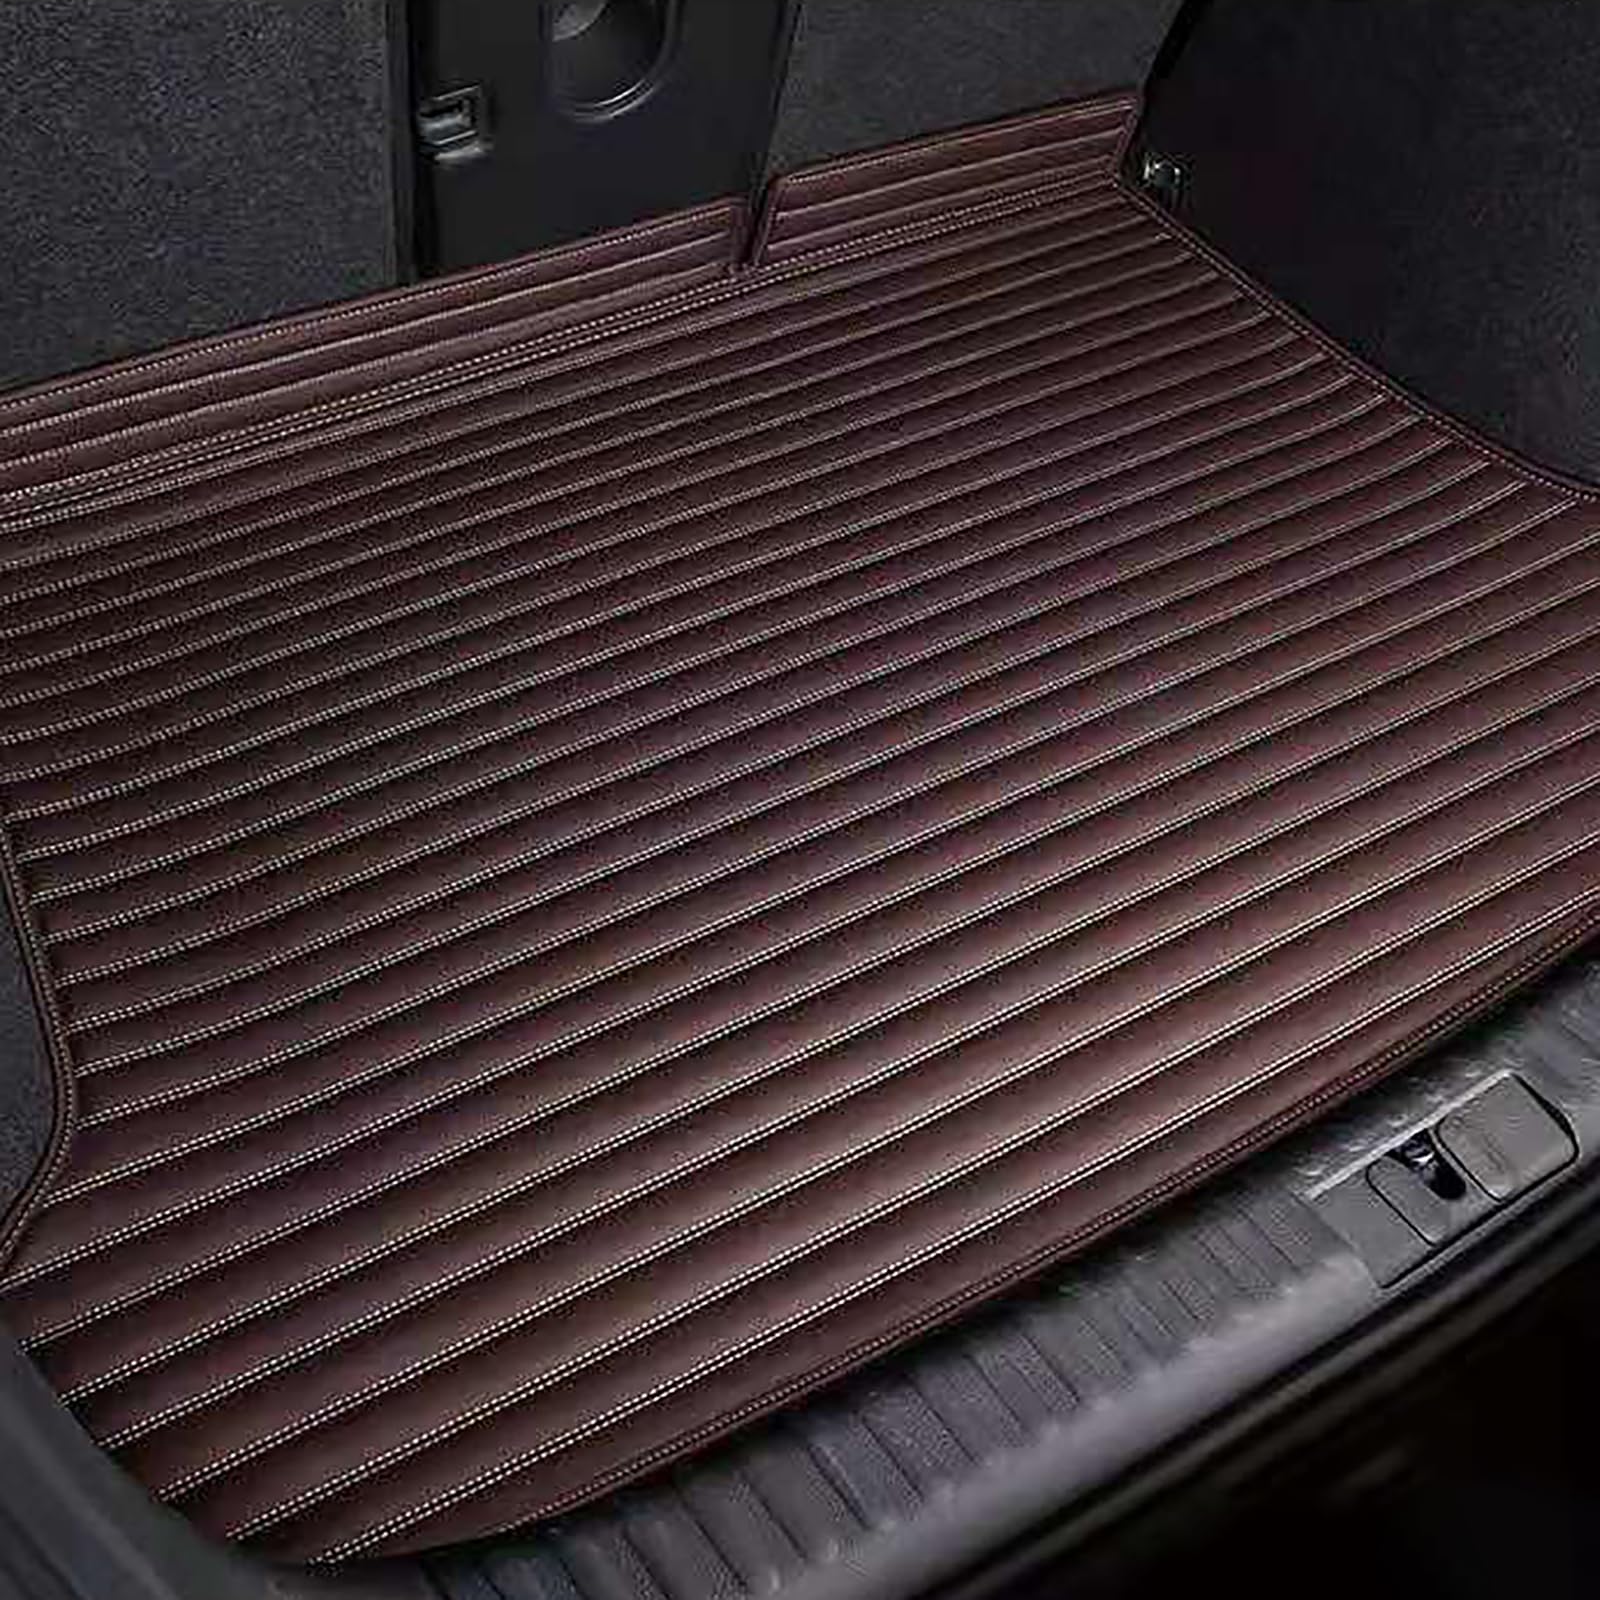 Auto Leder Kofferraummatten Für Lexus RX 450HL 6 7 Seats 2019 2020, Kofferraumwanne Cargo Schutzmatten Kofferraumschutz Fracht Teppich Wasserdicht rutschfest AutozubehöR,D/Coffee von PLCGTNNP